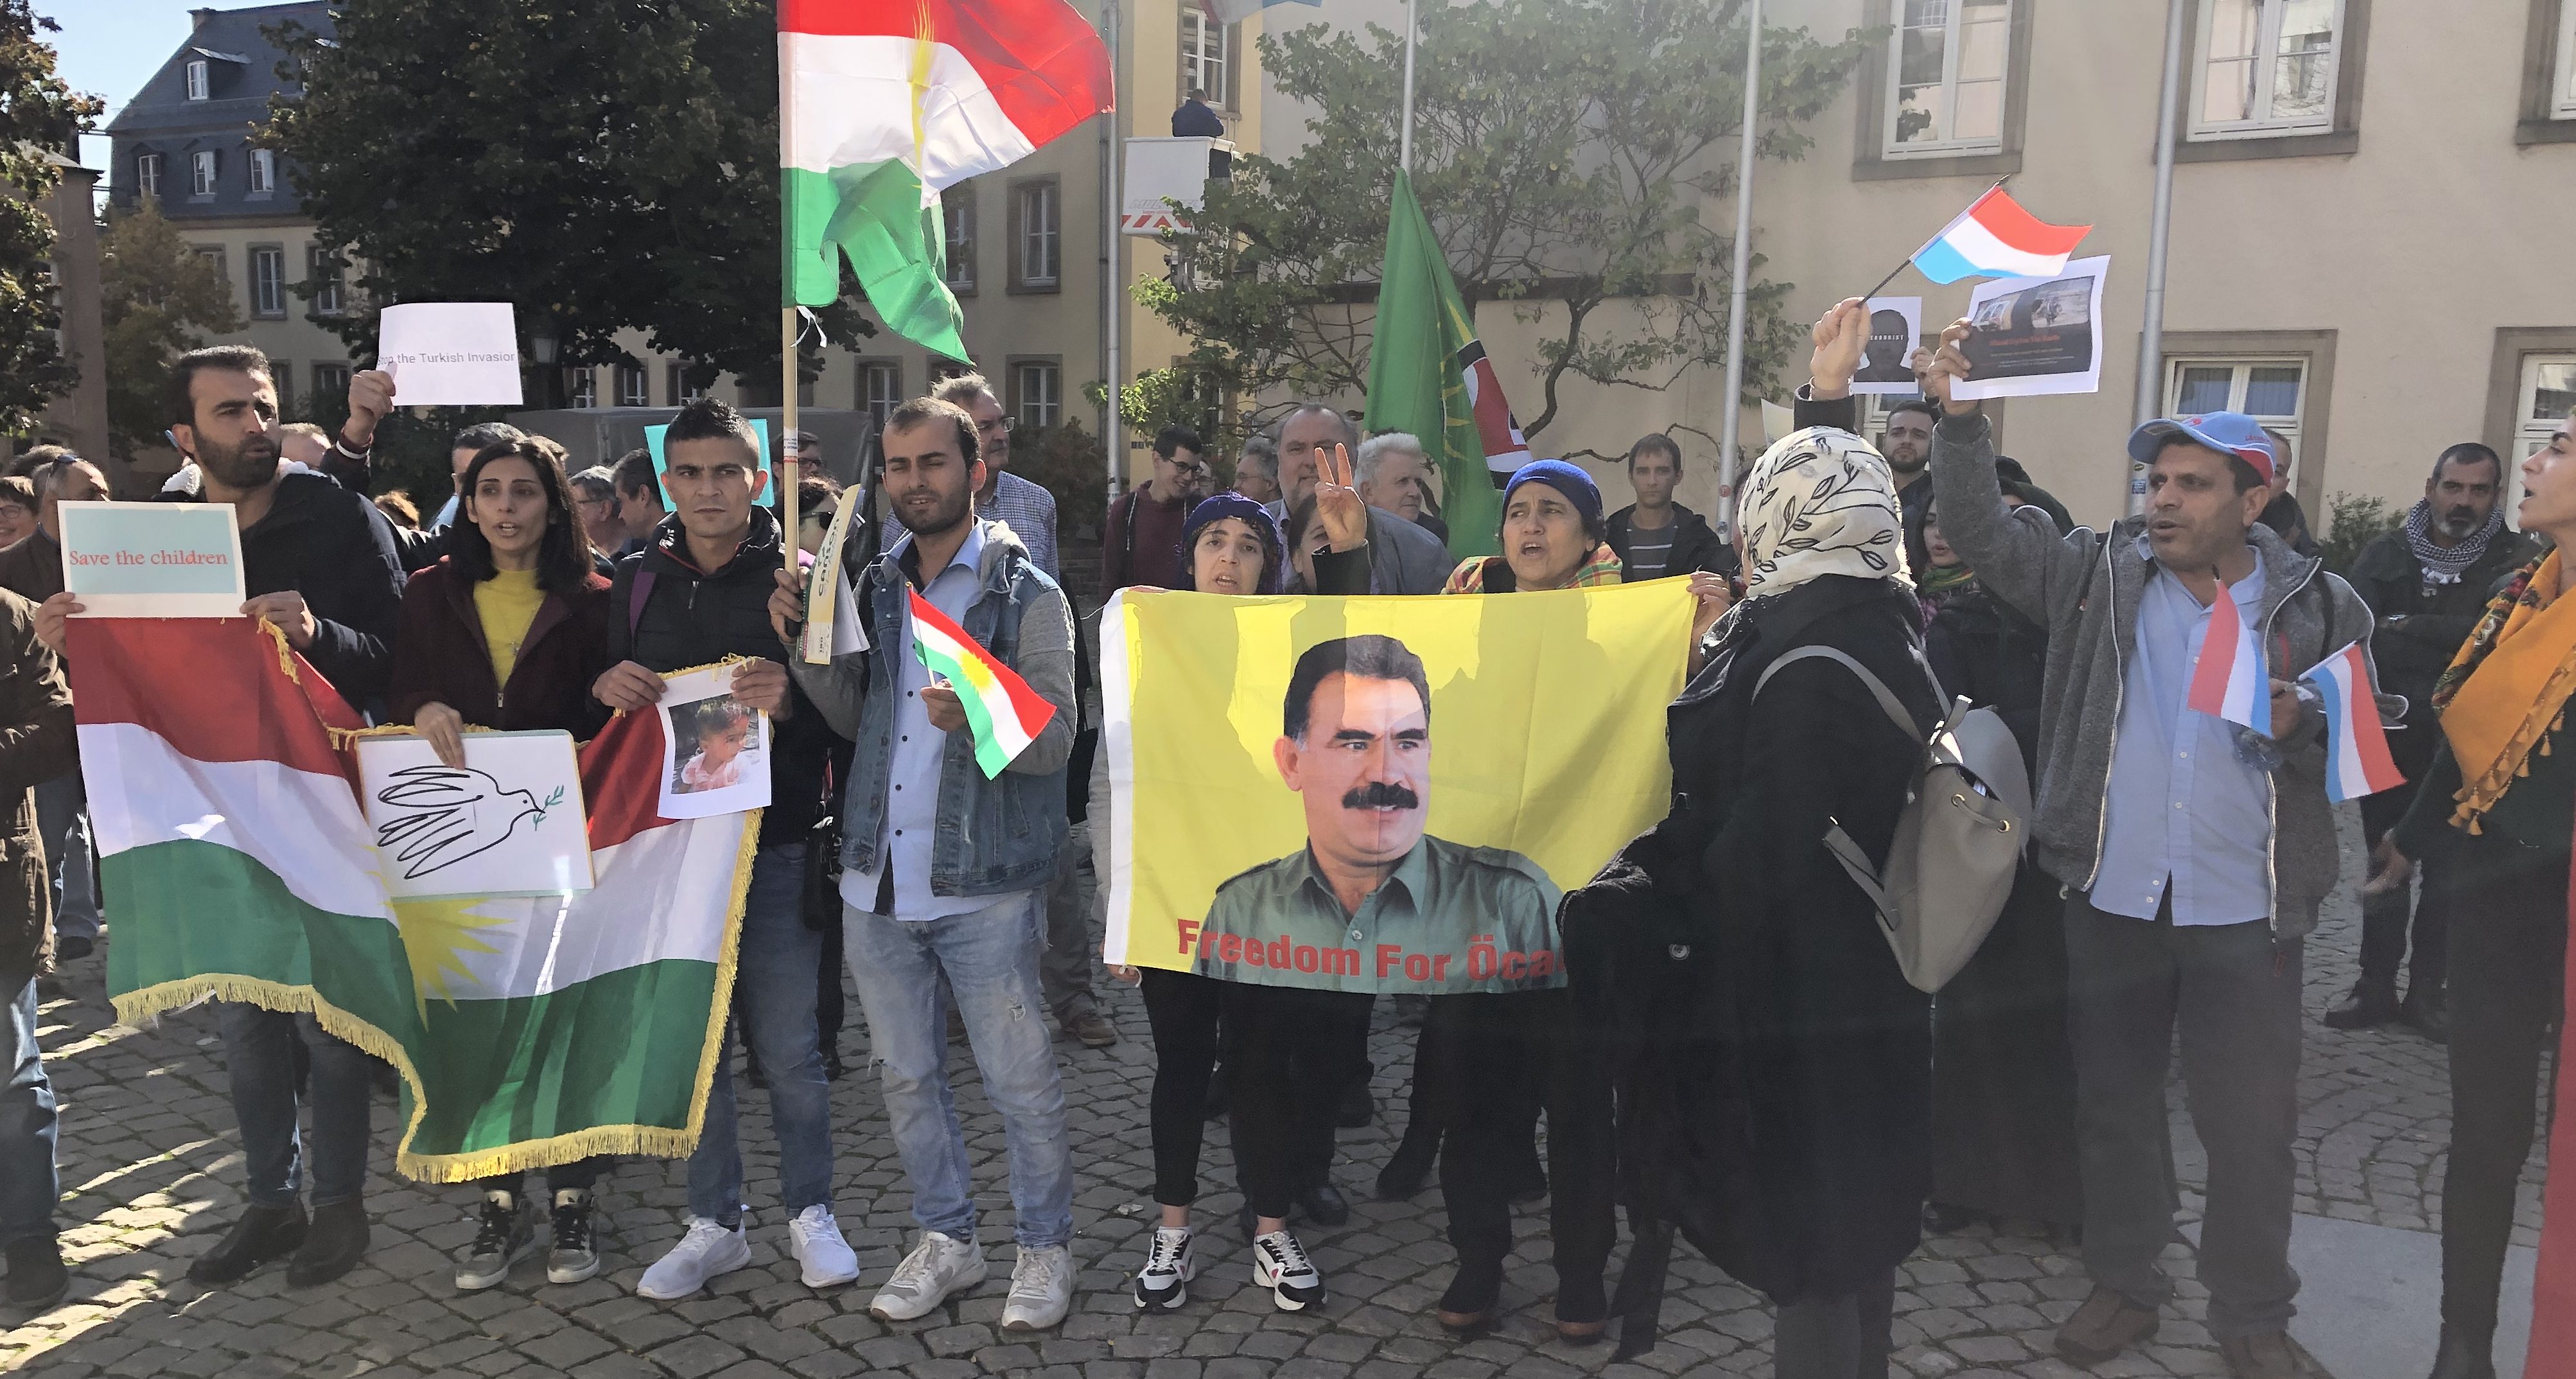 Türkische Offensive: Kurden demonstrieren auf Clairefontaine-Platz, Asselborn spricht von „Invasion“ und kündigt „Wunder“ an